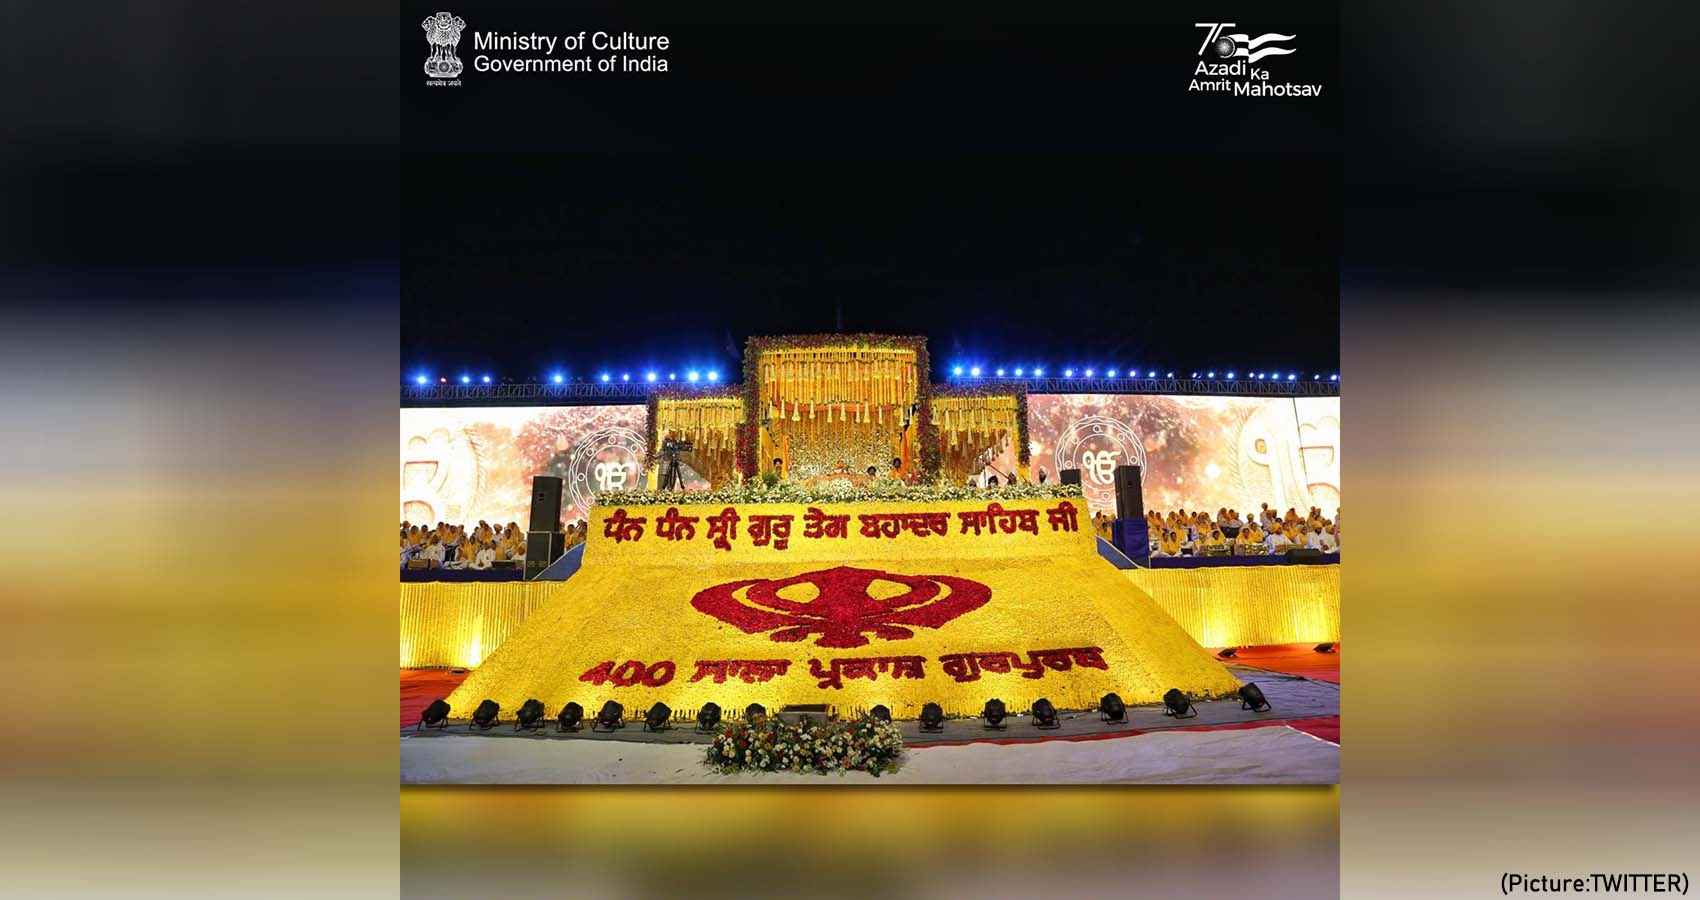 400 Ragis Perform Kirtan On Red Fort During 400th Prakash Parv Celebration Of Sikh Guru Tegh Bahadur